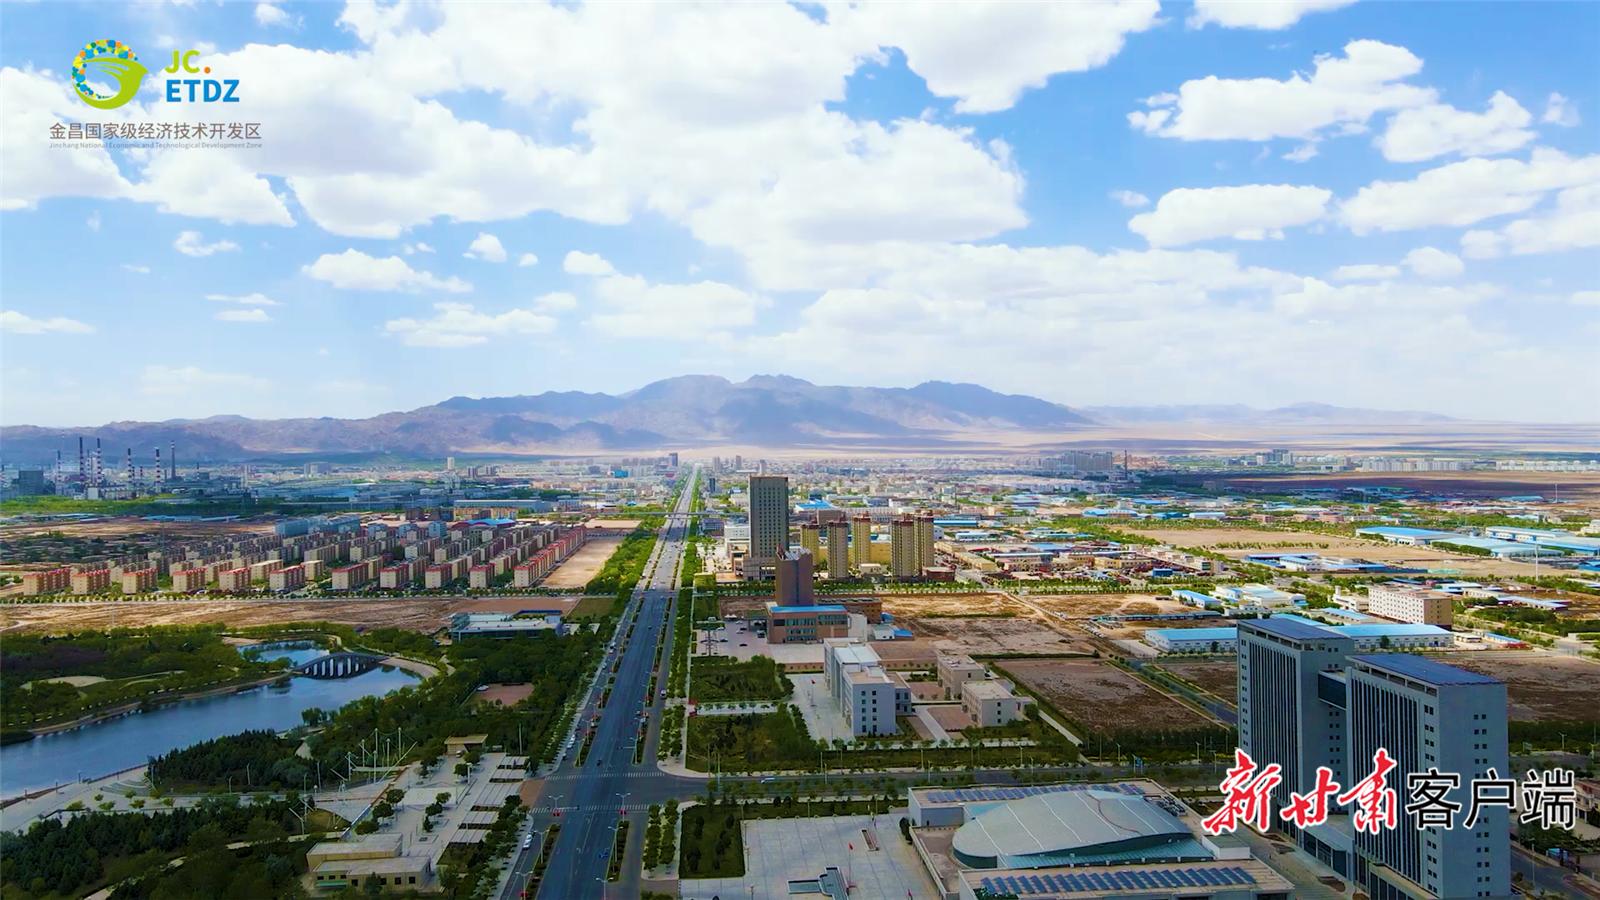 金昌国家级经济技术开发区。(18569244)-20221211065213.png